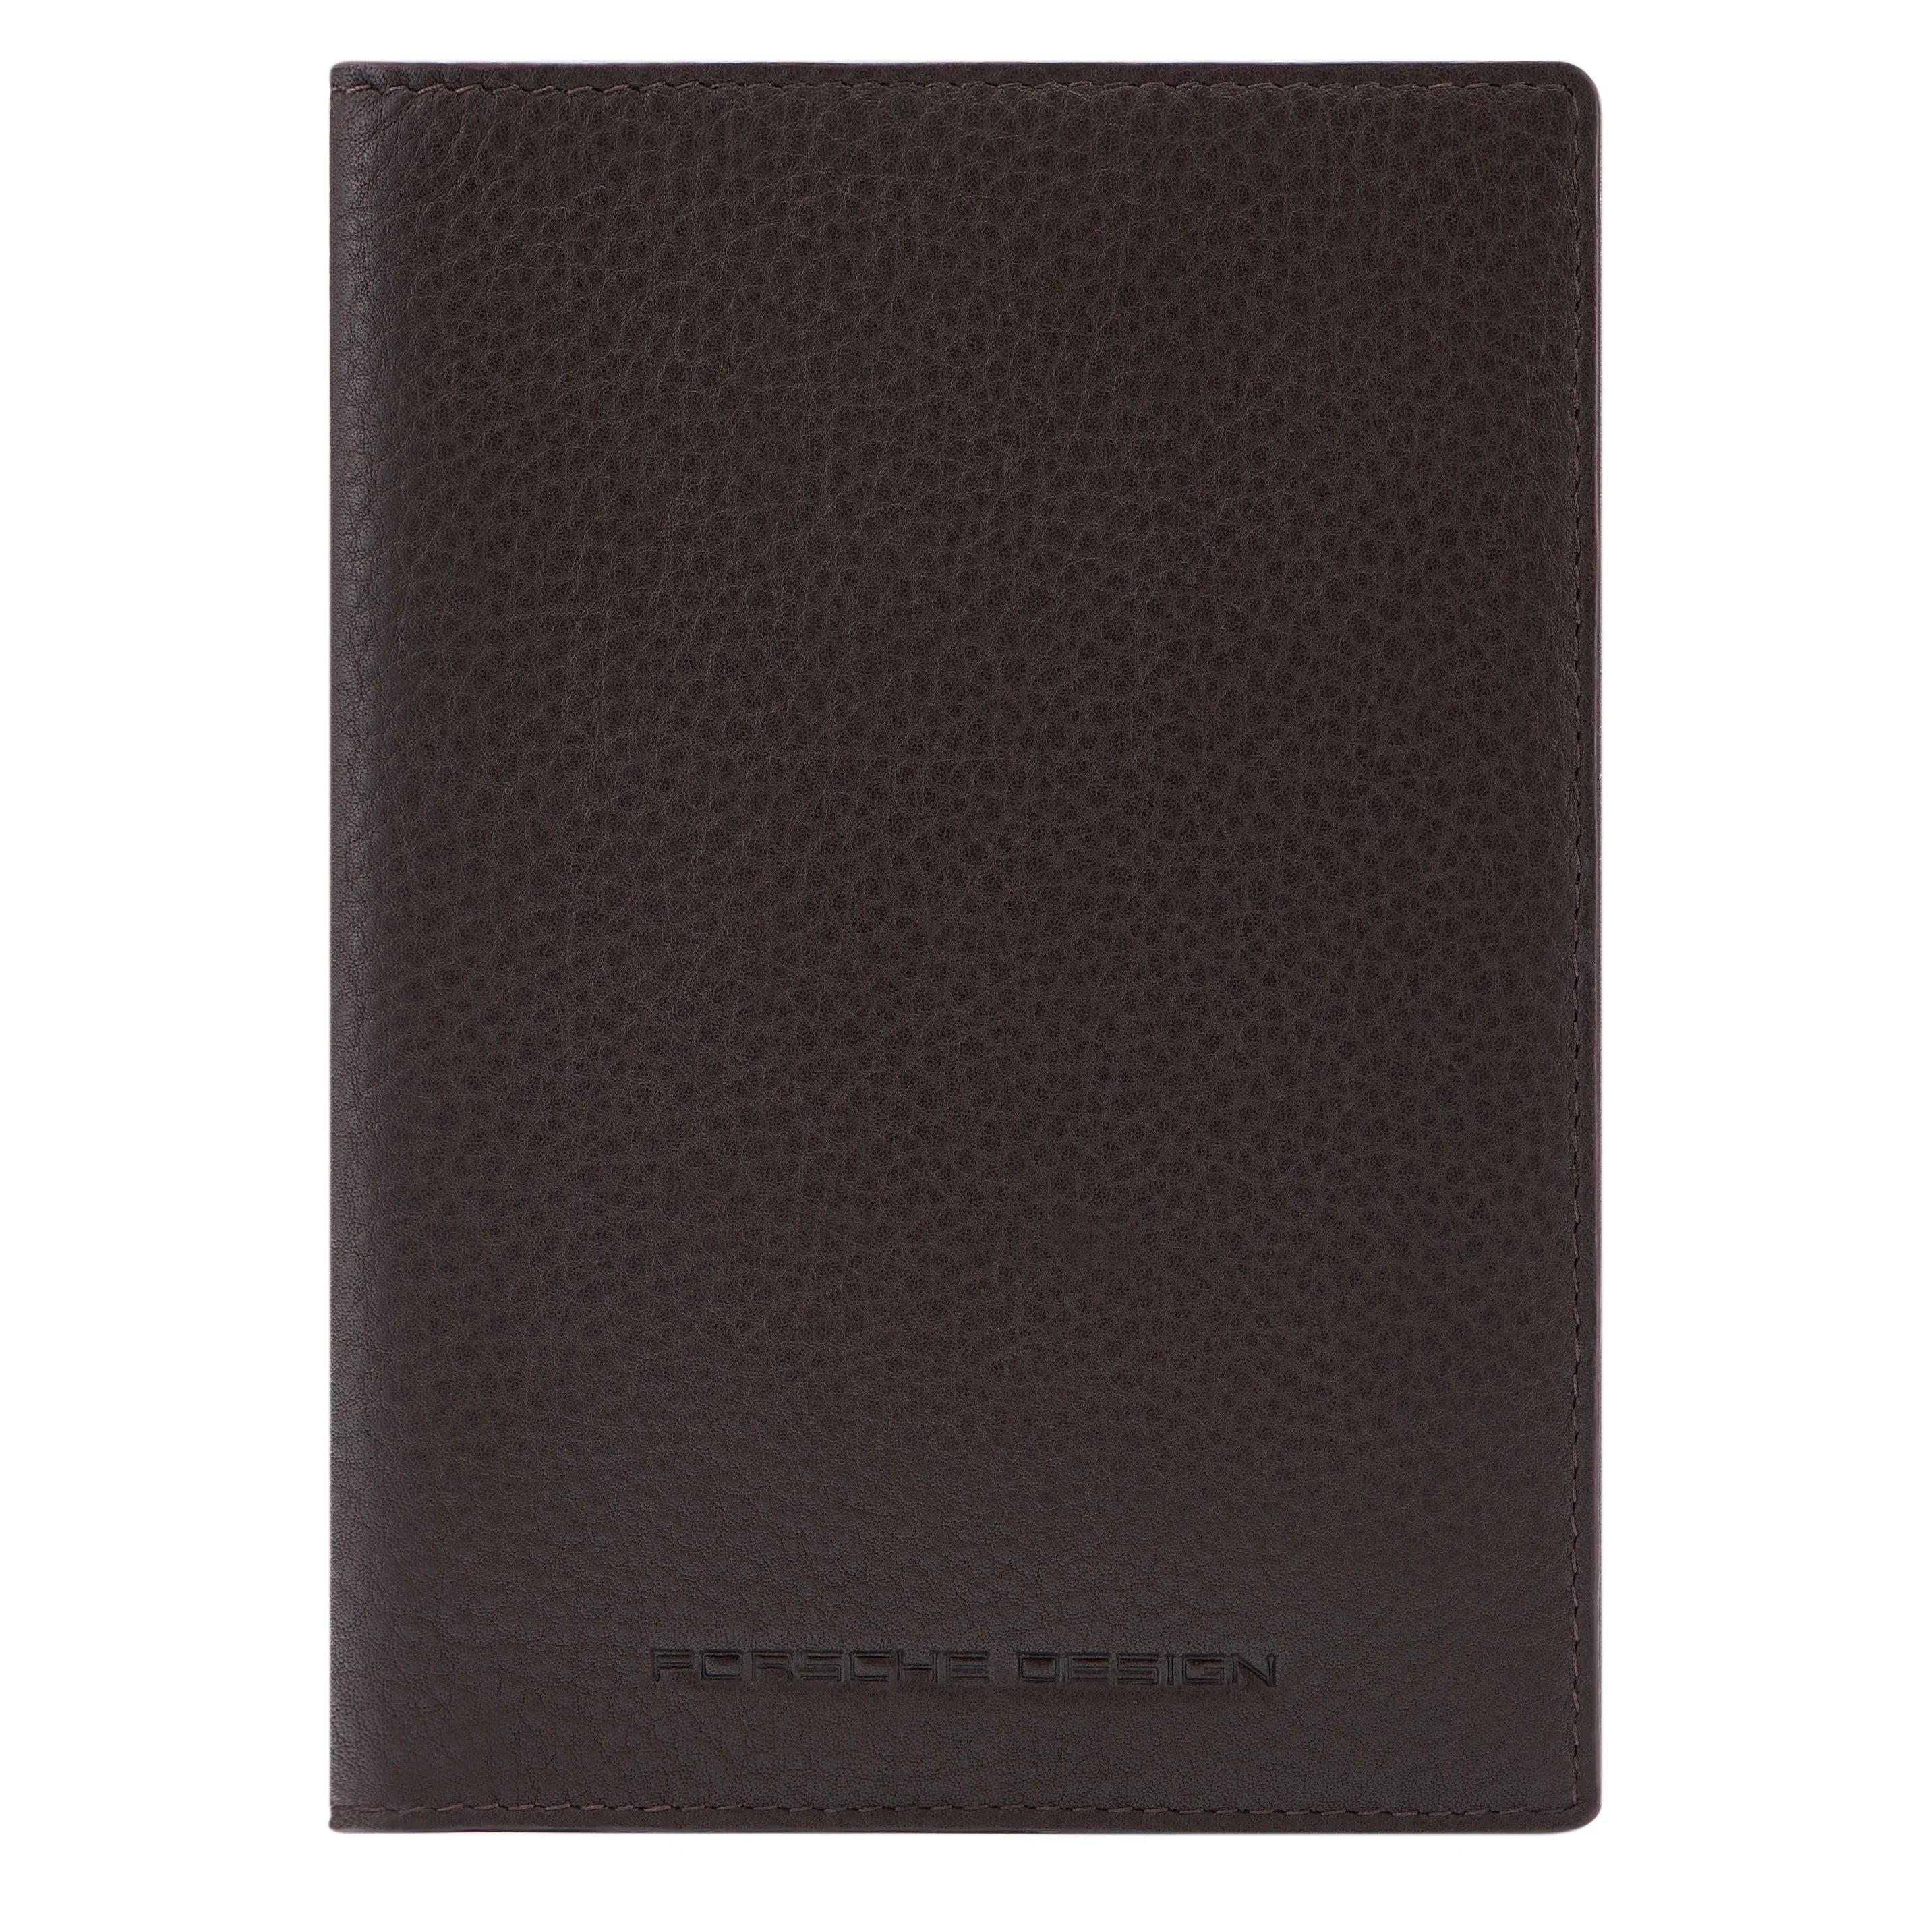 Porsche Design Accessories Business Passport Holder RFID 14 cm - Dark Brown